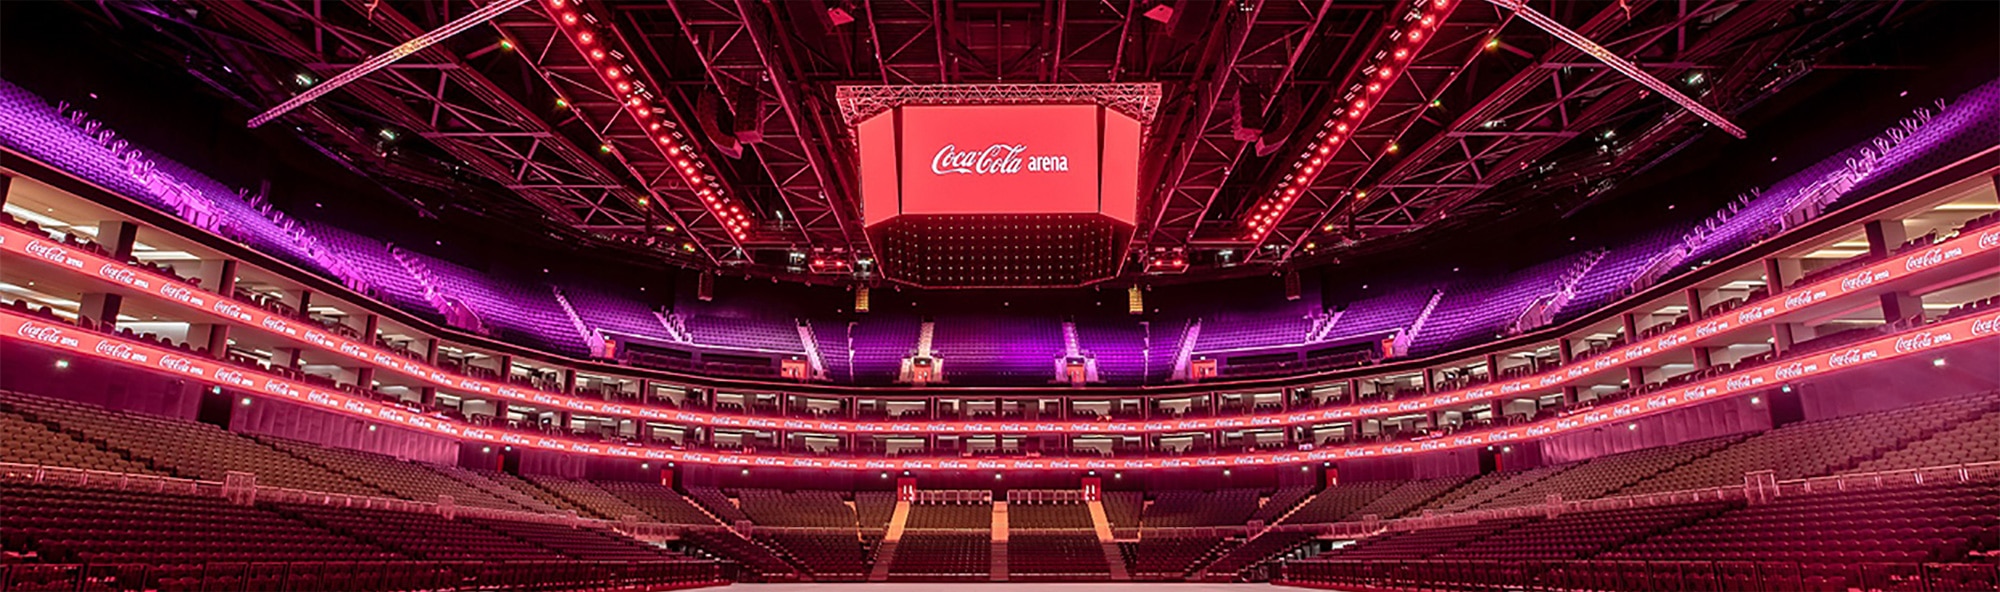 Coca Cola Arena interior